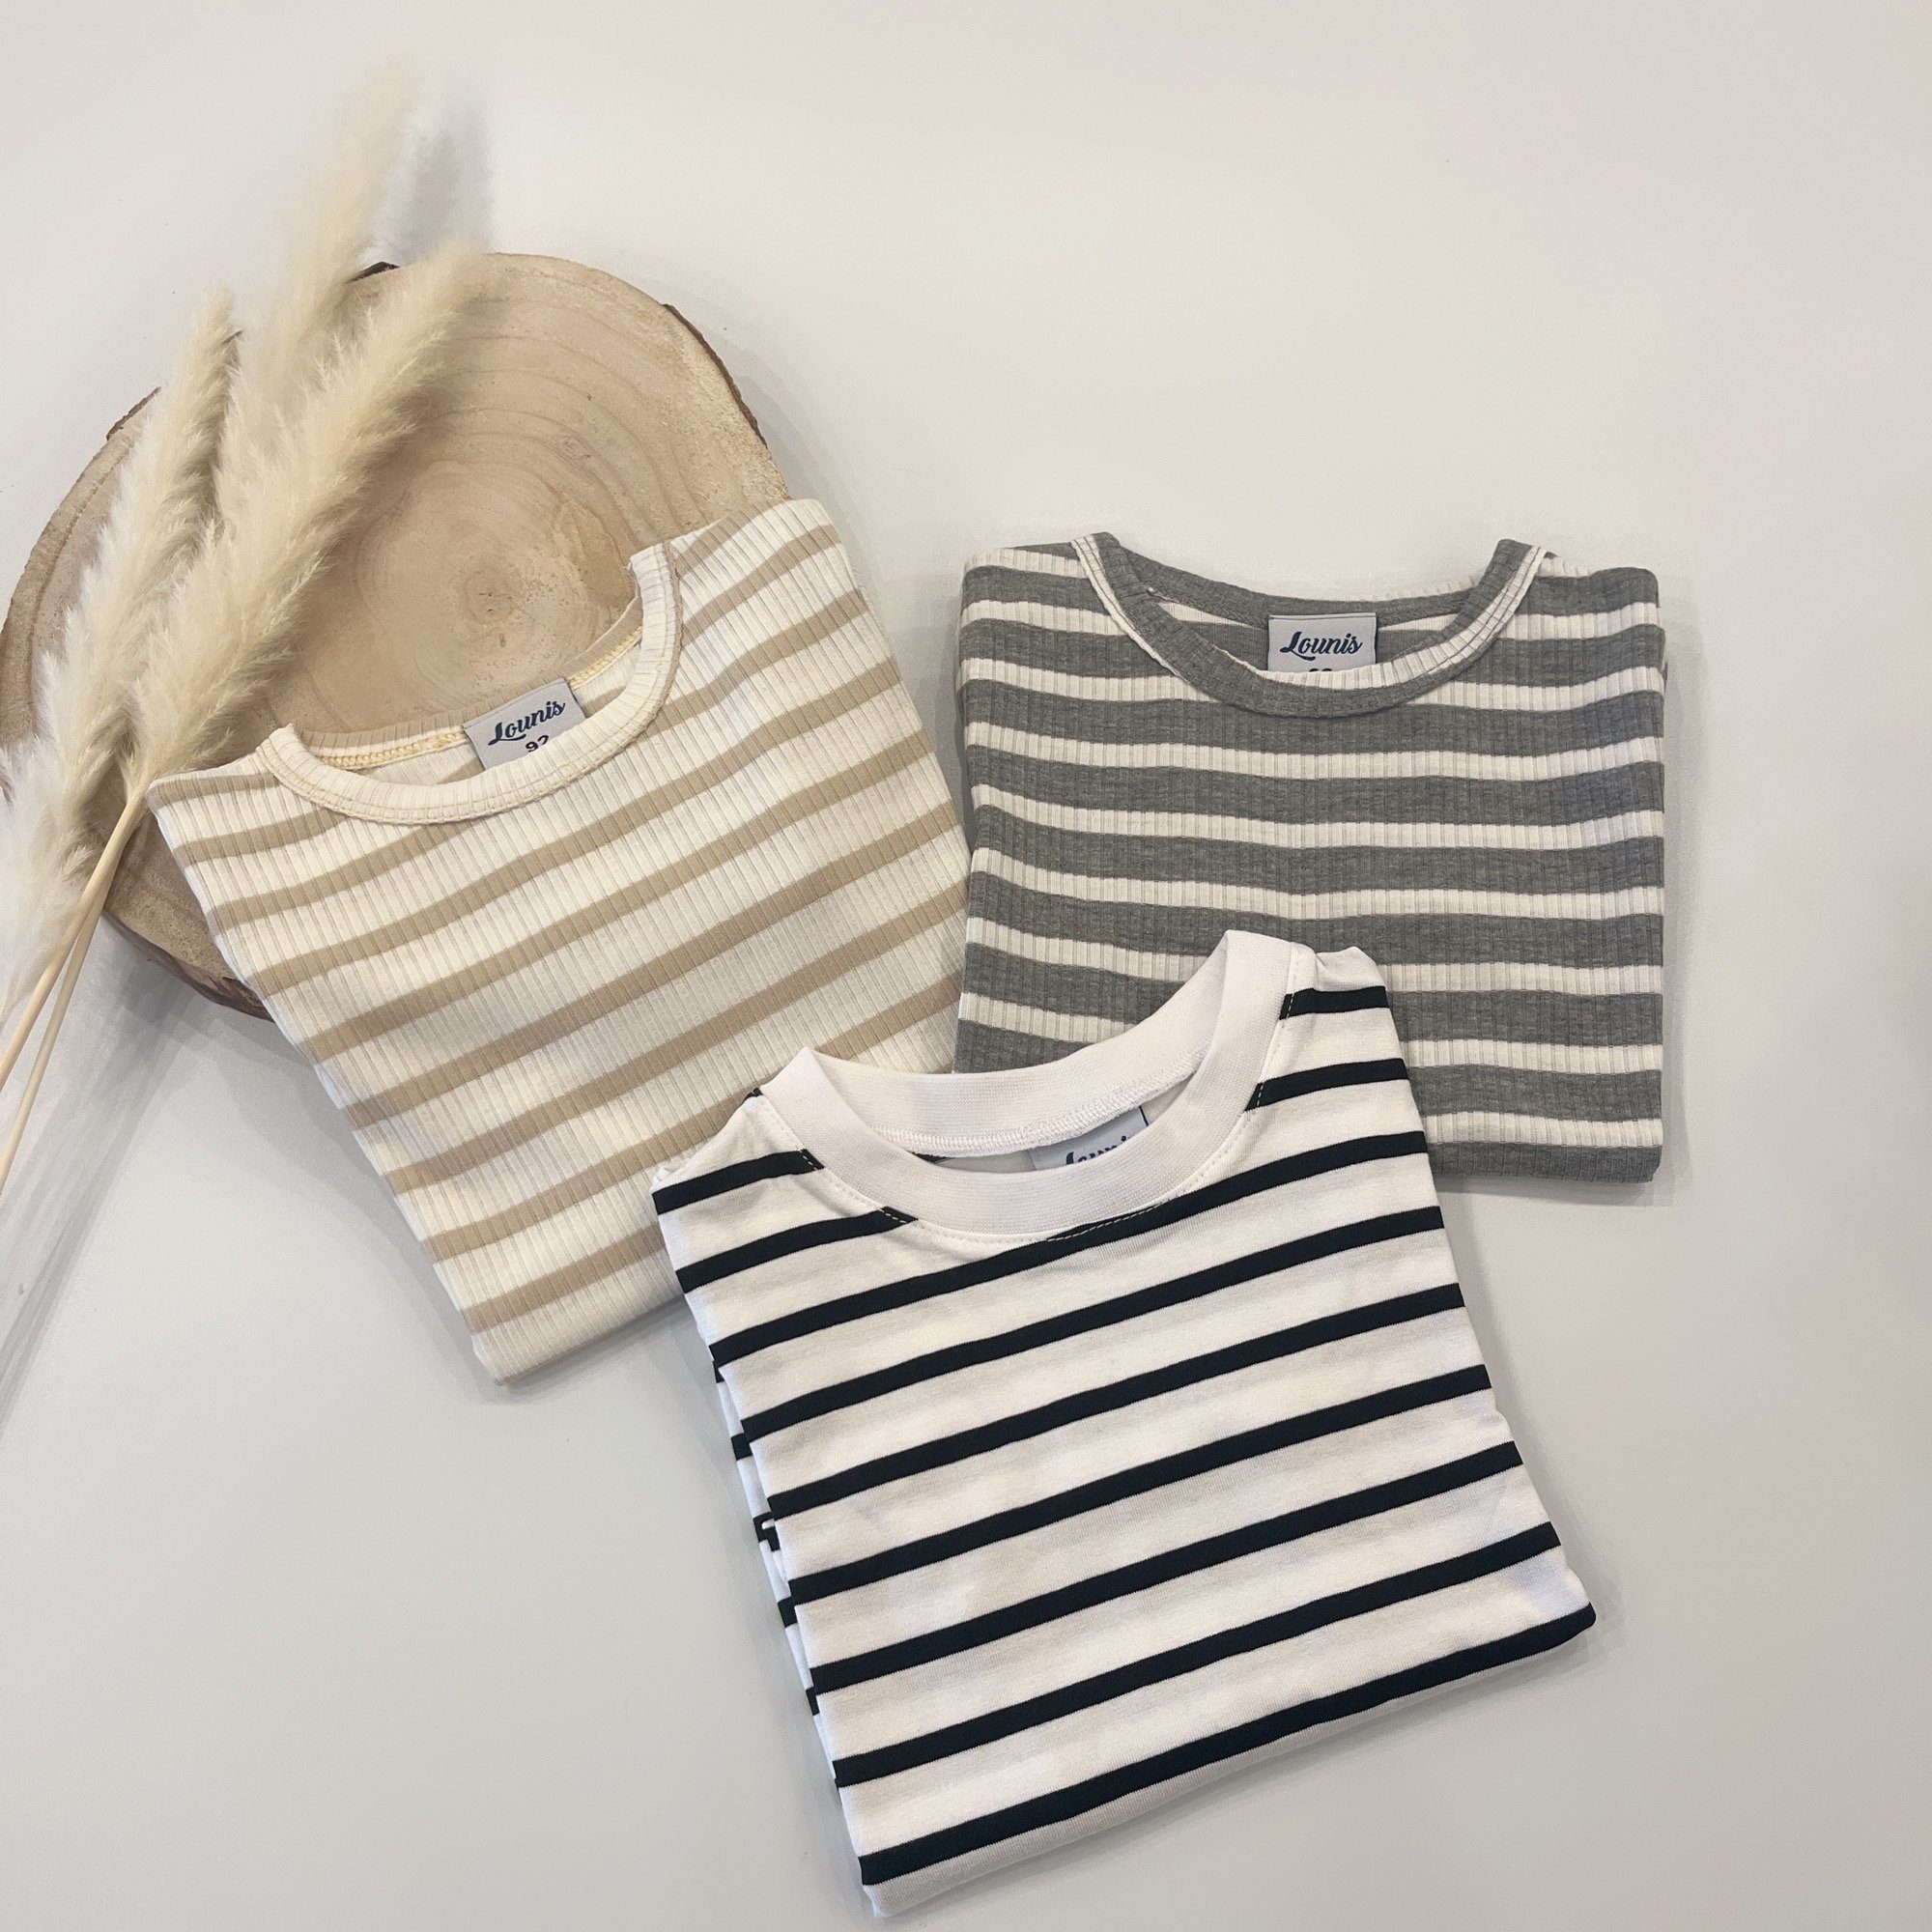 Lounis T-Shirt Kinder - - Baby - Shirt T-Shirt grau-weiß/gestreift Streifen